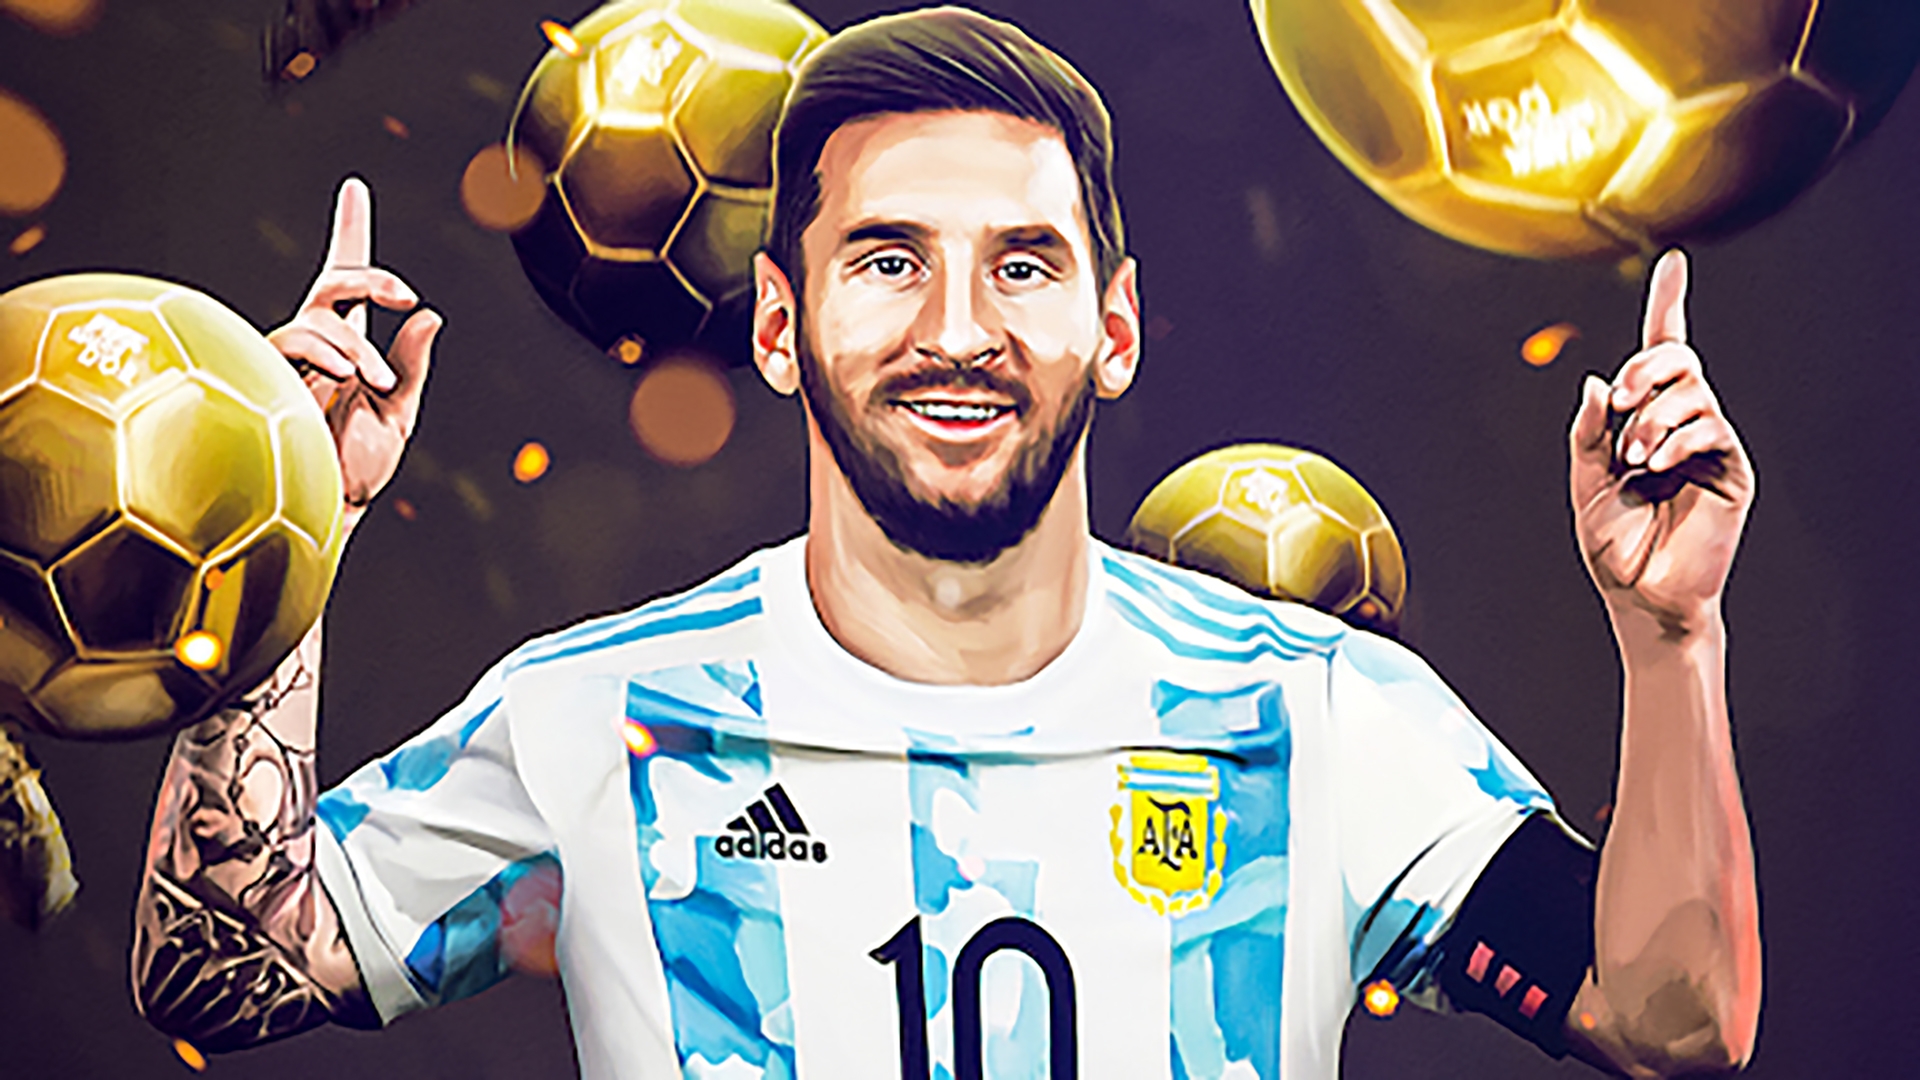 Messi được liệt kê vào danh sách cầu thủ sẽ nhận hạng mục Qủa bóng vàng trong mùa World Cup này.